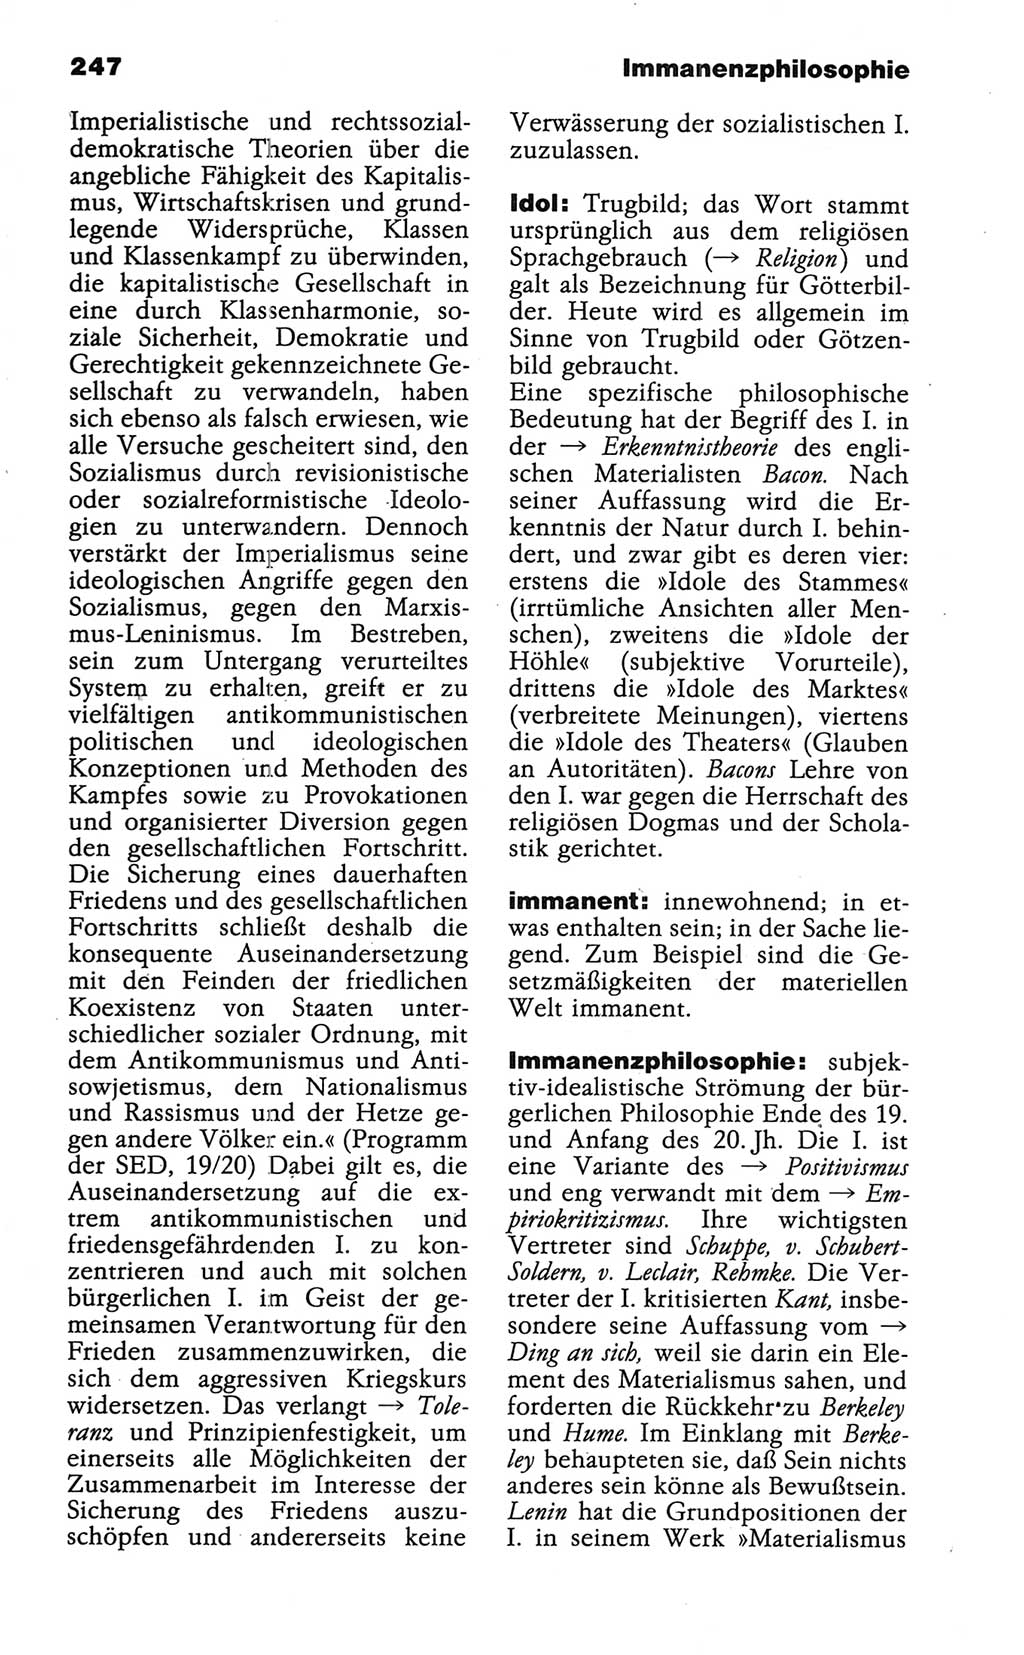 Wörterbuch der marxistisch-leninistischen Philosophie [Deutsche Demokratische Republik (DDR)] 1986, Seite 247 (Wb. ML Phil. DDR 1986, S. 247)